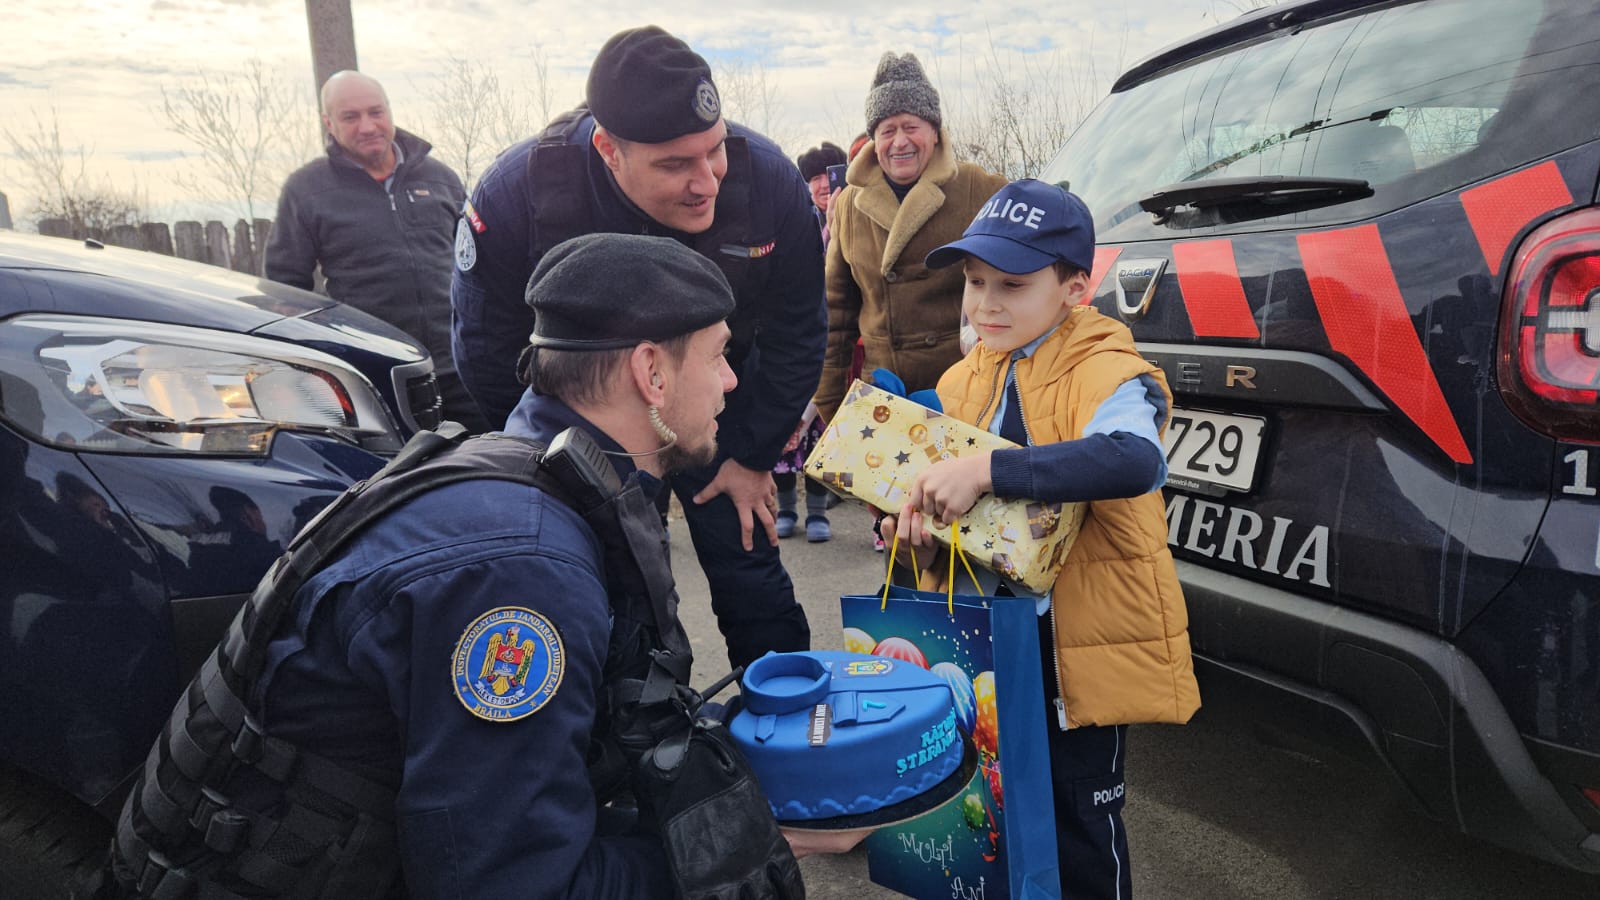 VIDEO: Surpriză uriaşă pentru Răzvan, un băieţel de 7 ani din Brăila. De ziua lui, a fost "Jandarm pentru o zi"